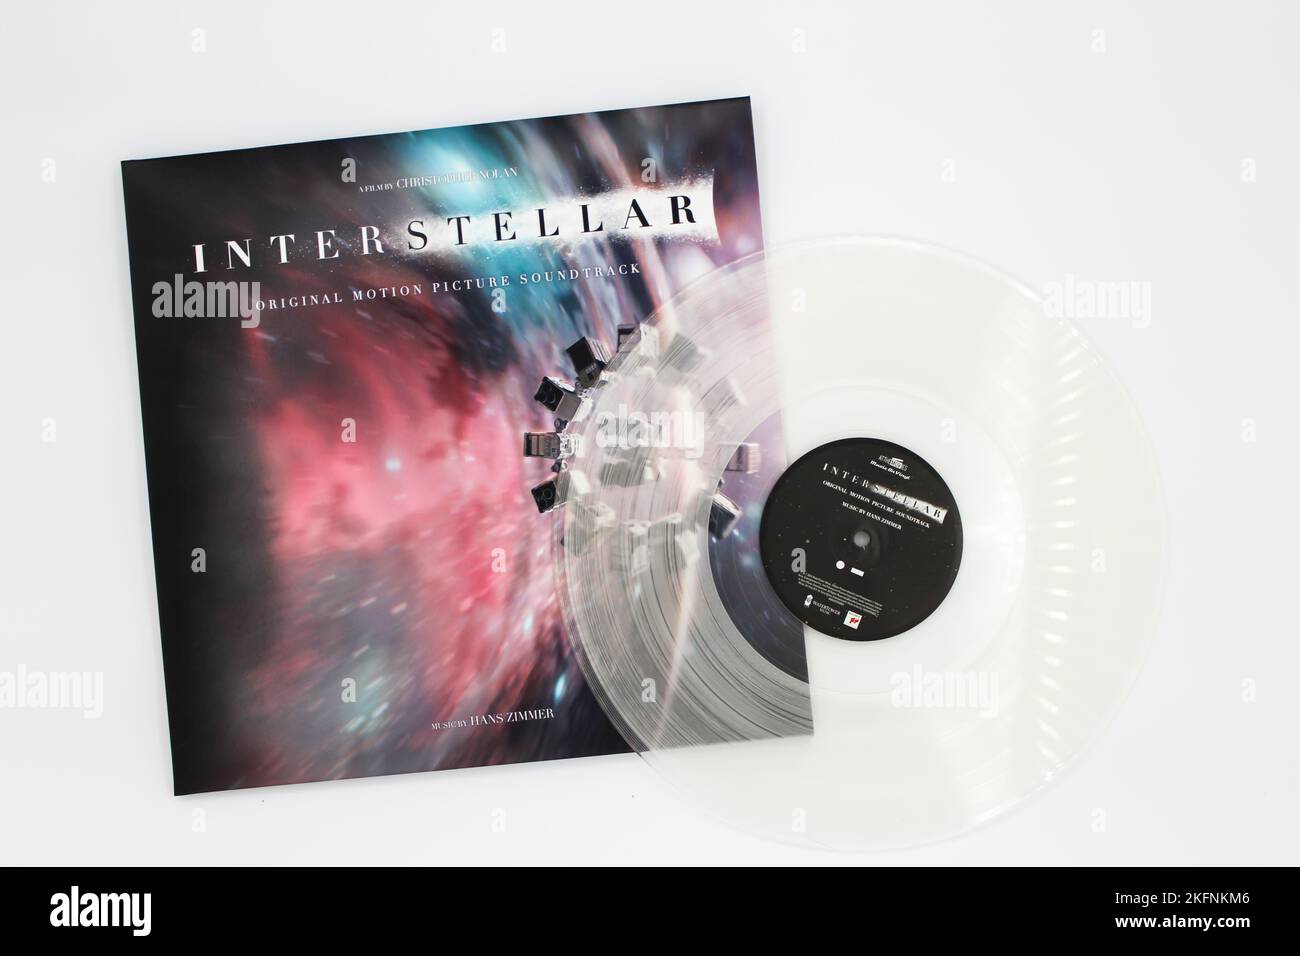 Interstellar Original Motion Picture Soundtrack è l'album composto da Hans Zimmer diretto da Christopher Nolan. Copertina dell'album in vinile. Foto Stock